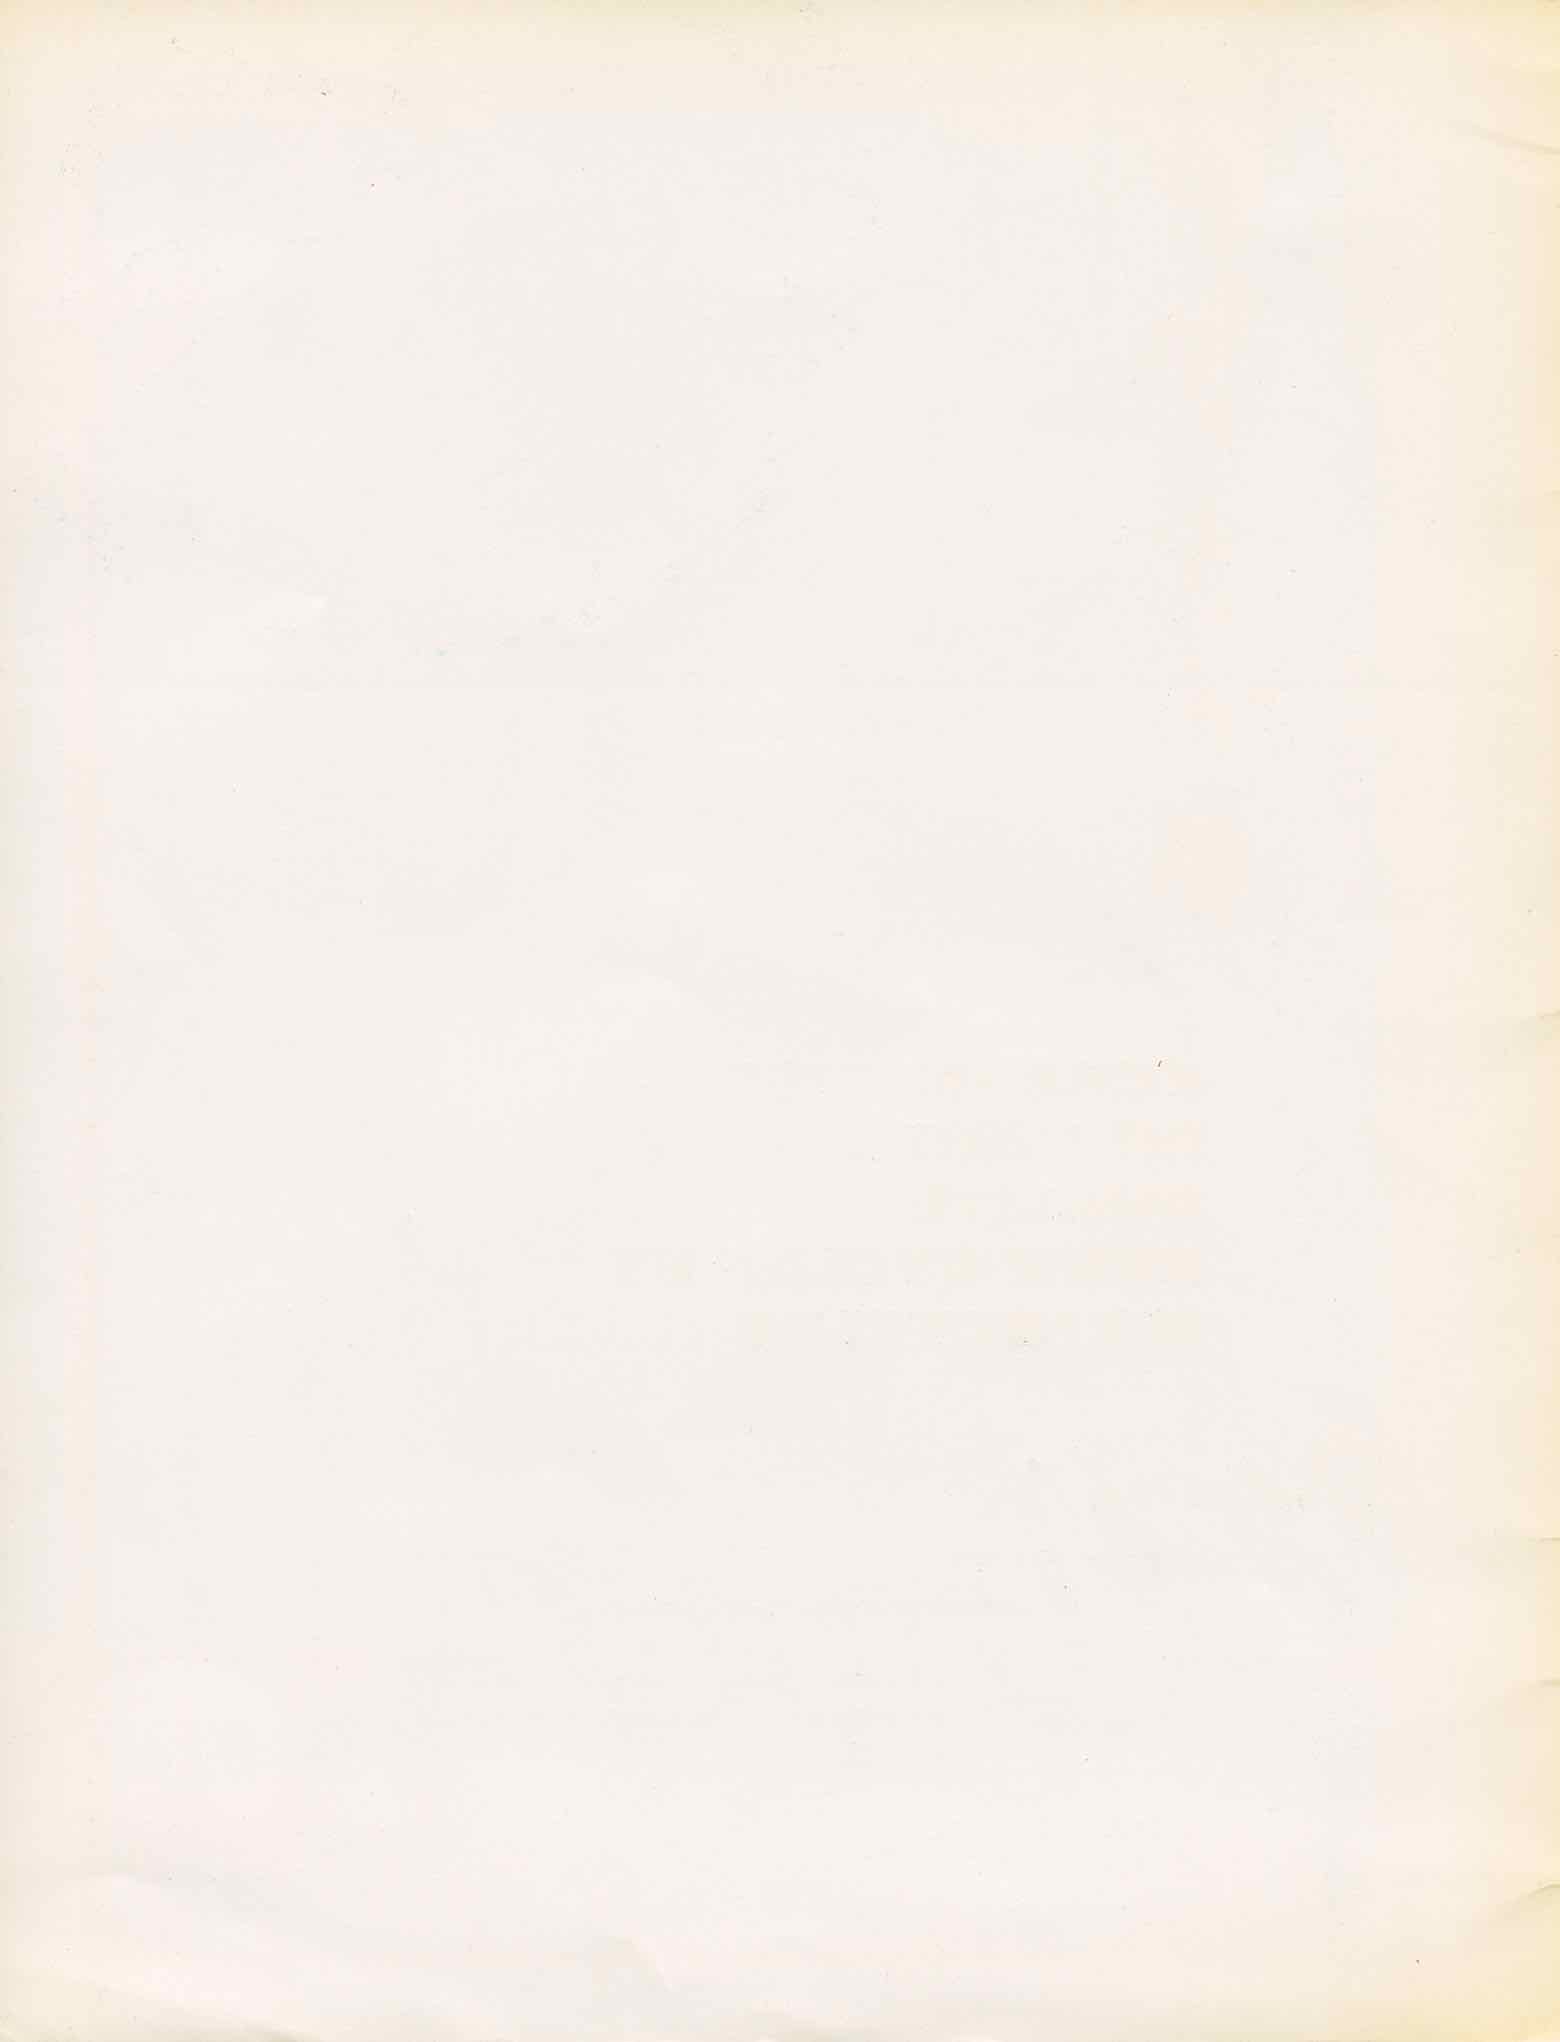 Huret Accessoires de Haut Qualite - 1969 scan 2 main image